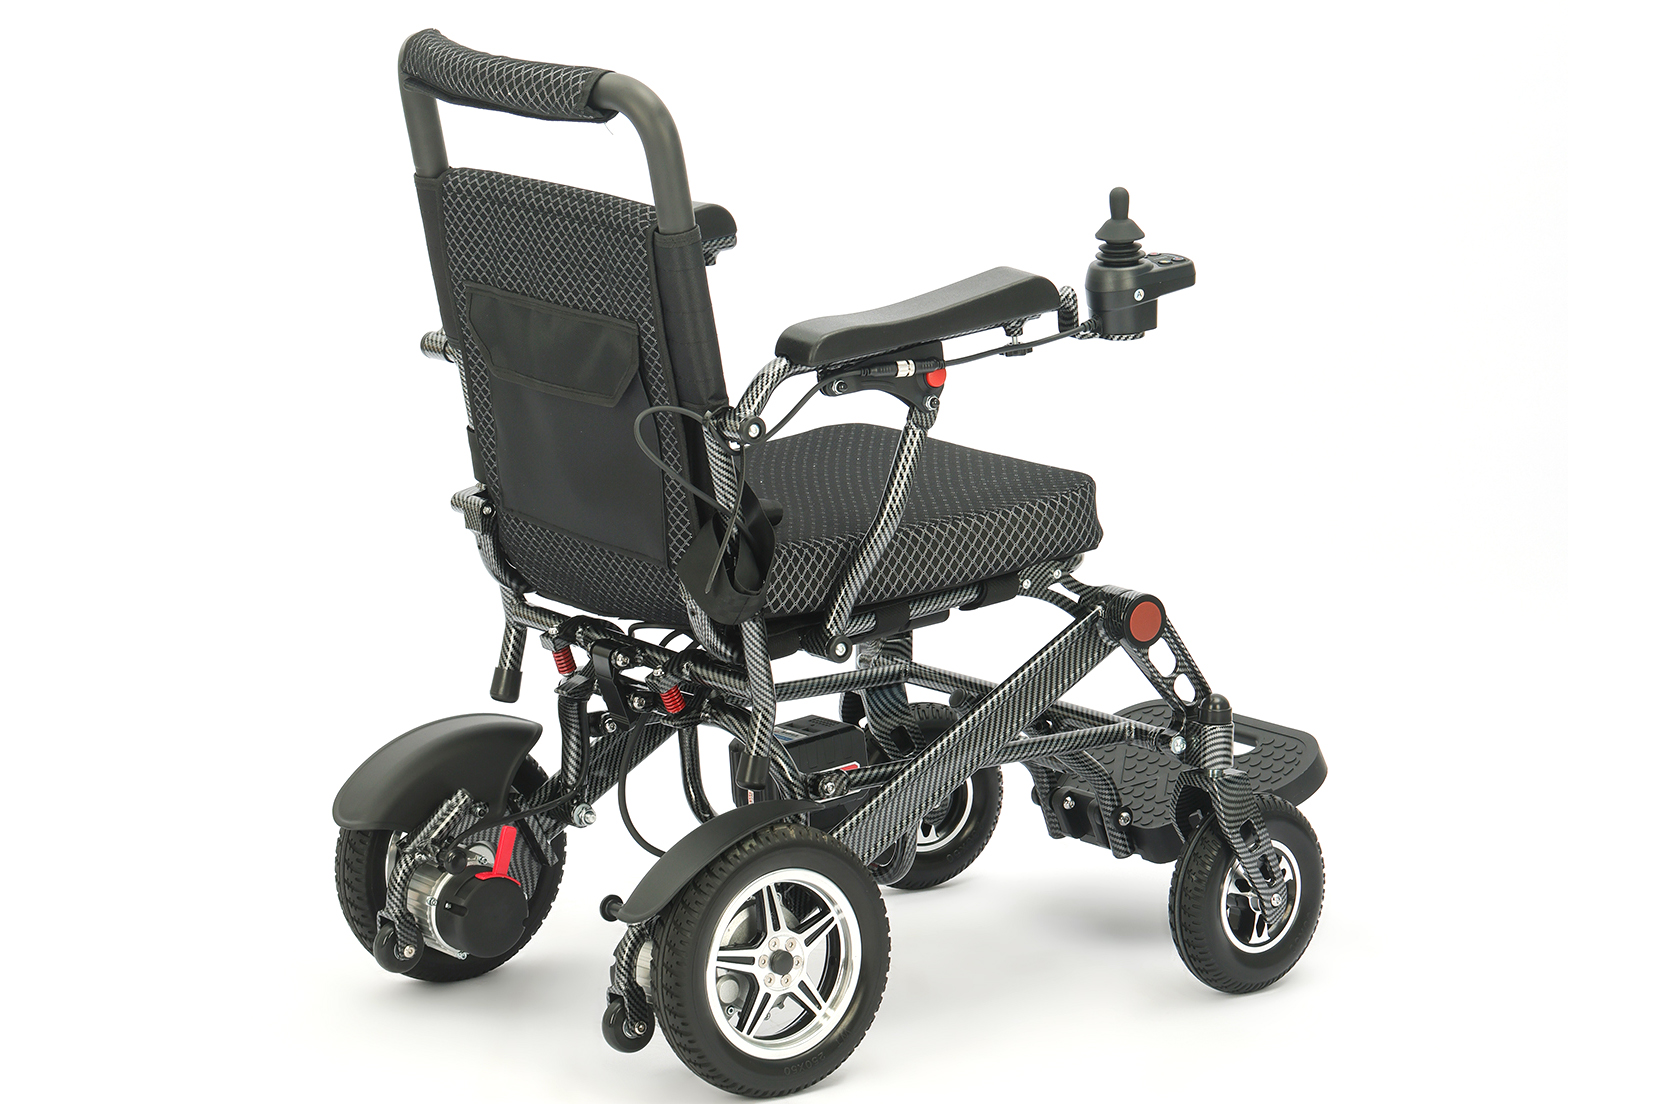 Kako odabrati lagana, udobna i pristupačna električna invalidska kolica za starije osobe kod kuće?